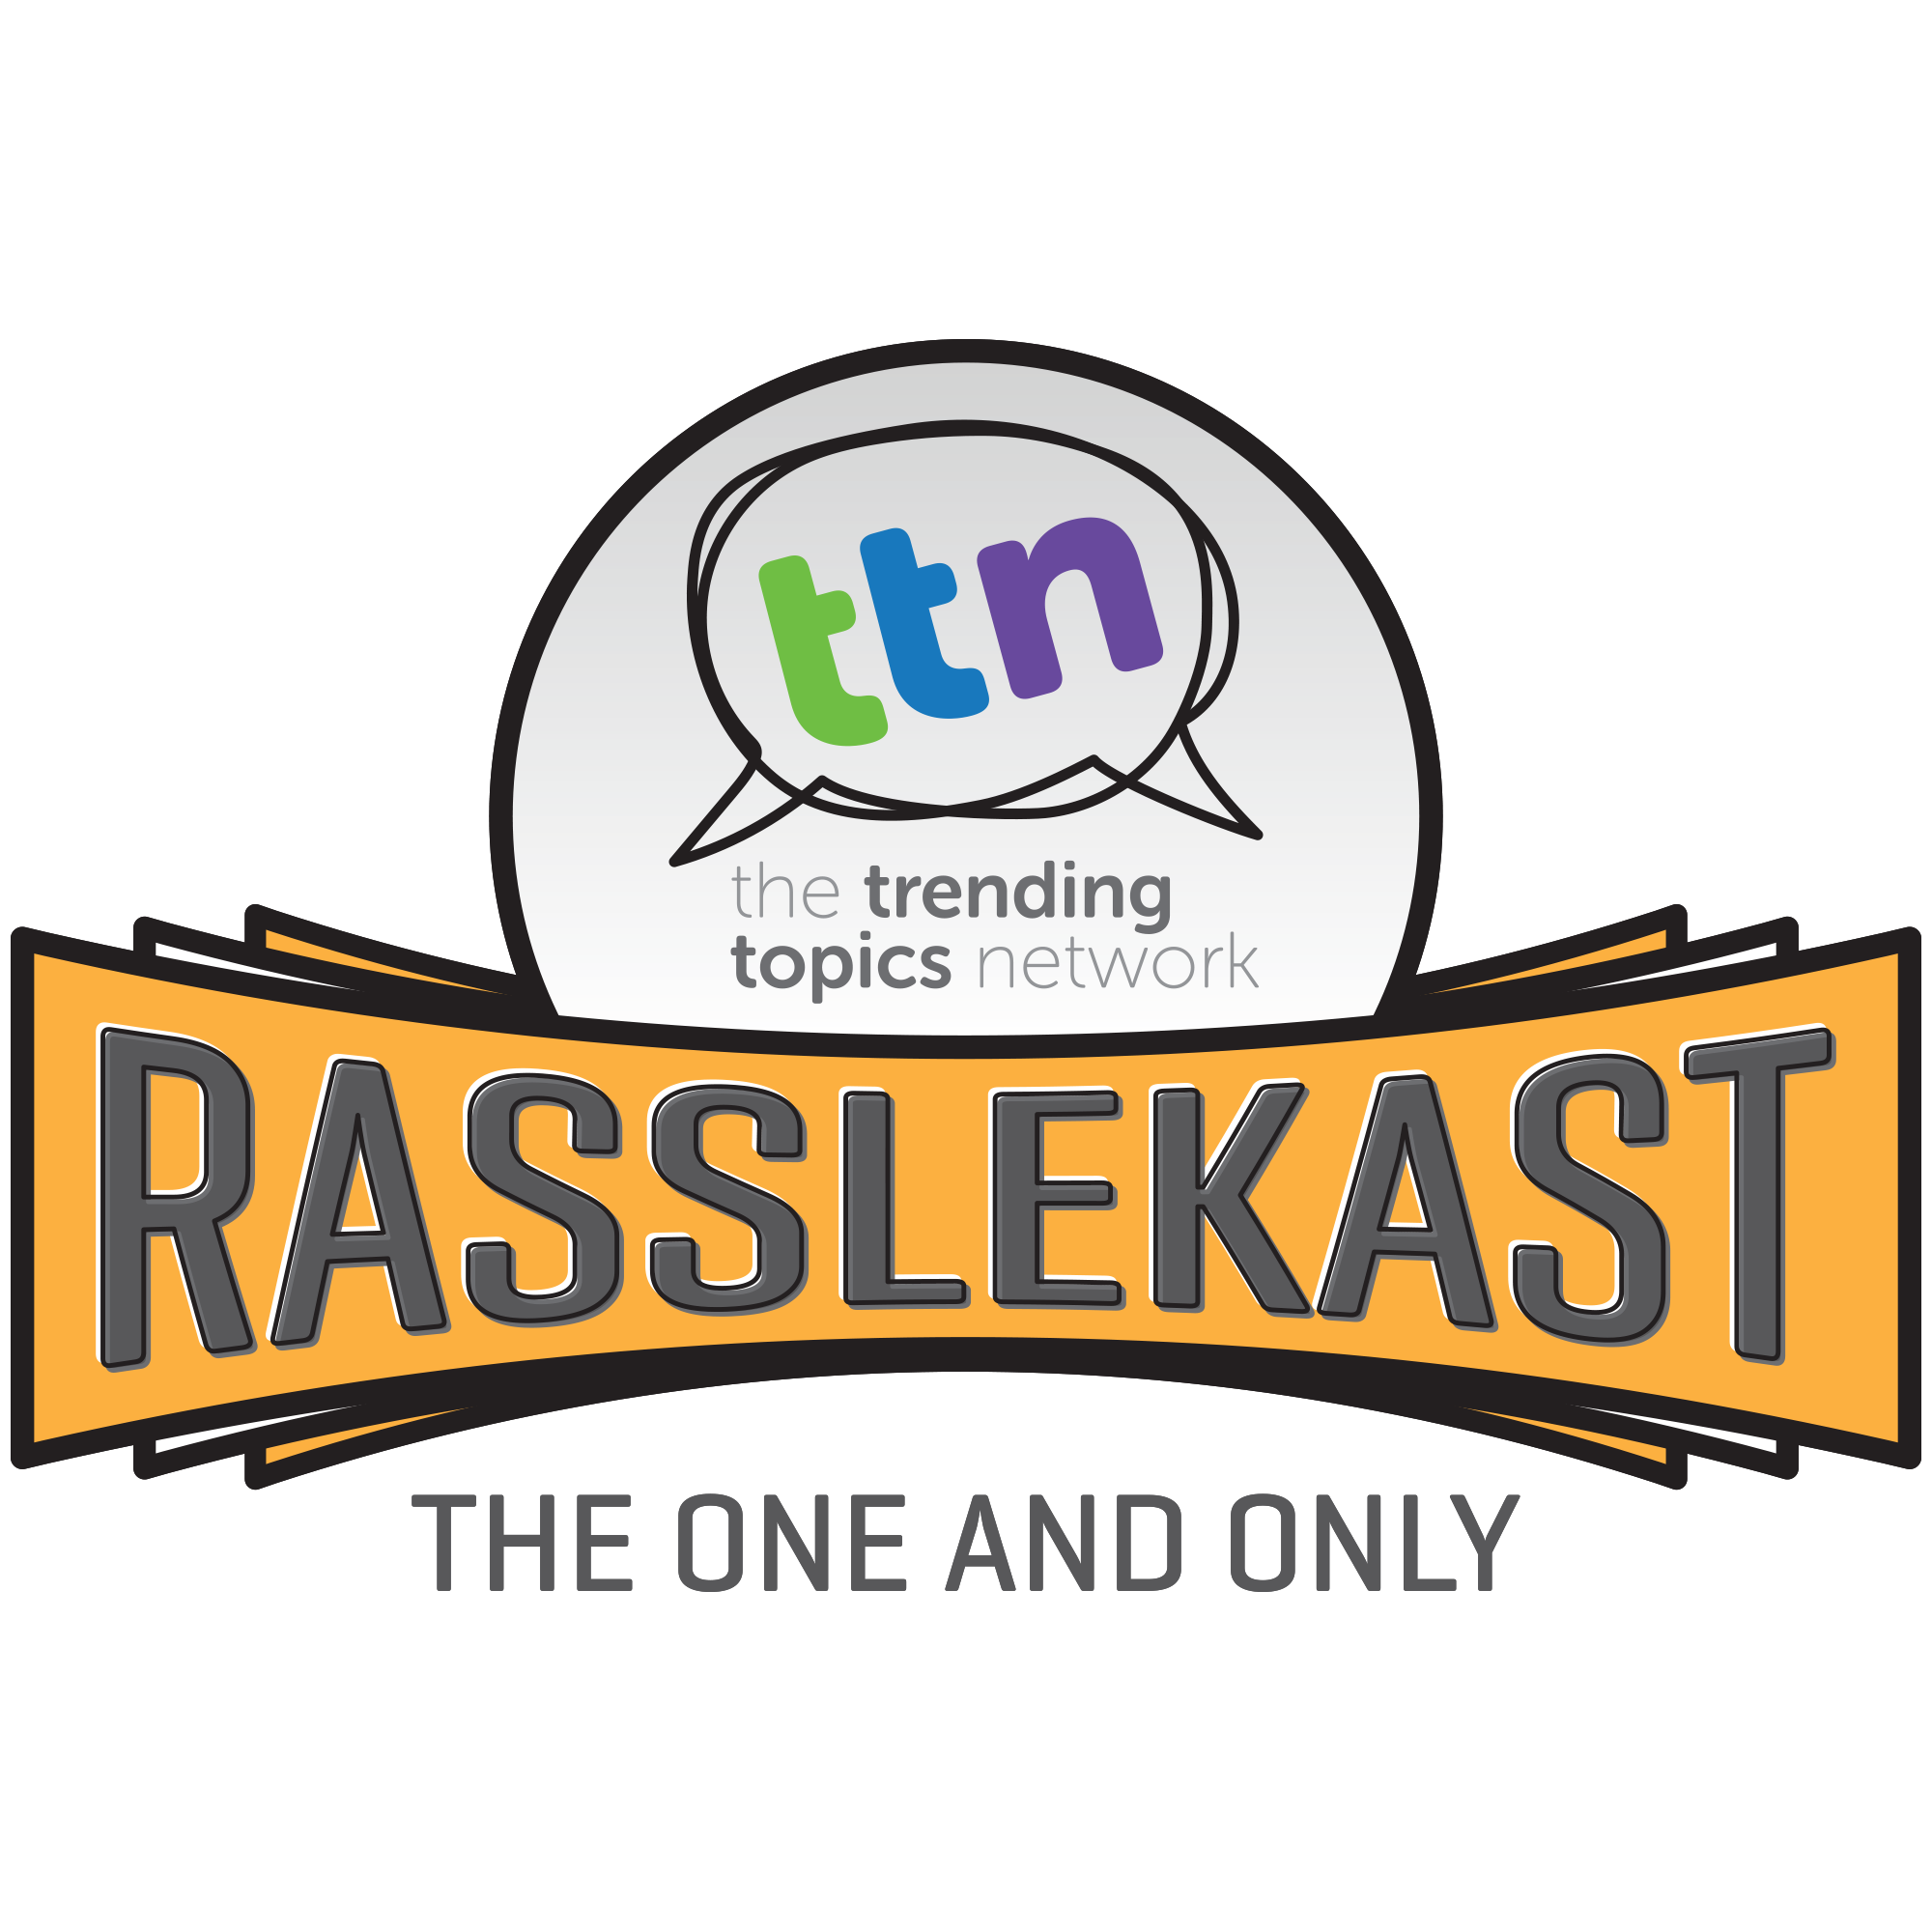 RassleKast Episode 154 - “The Destroyer”